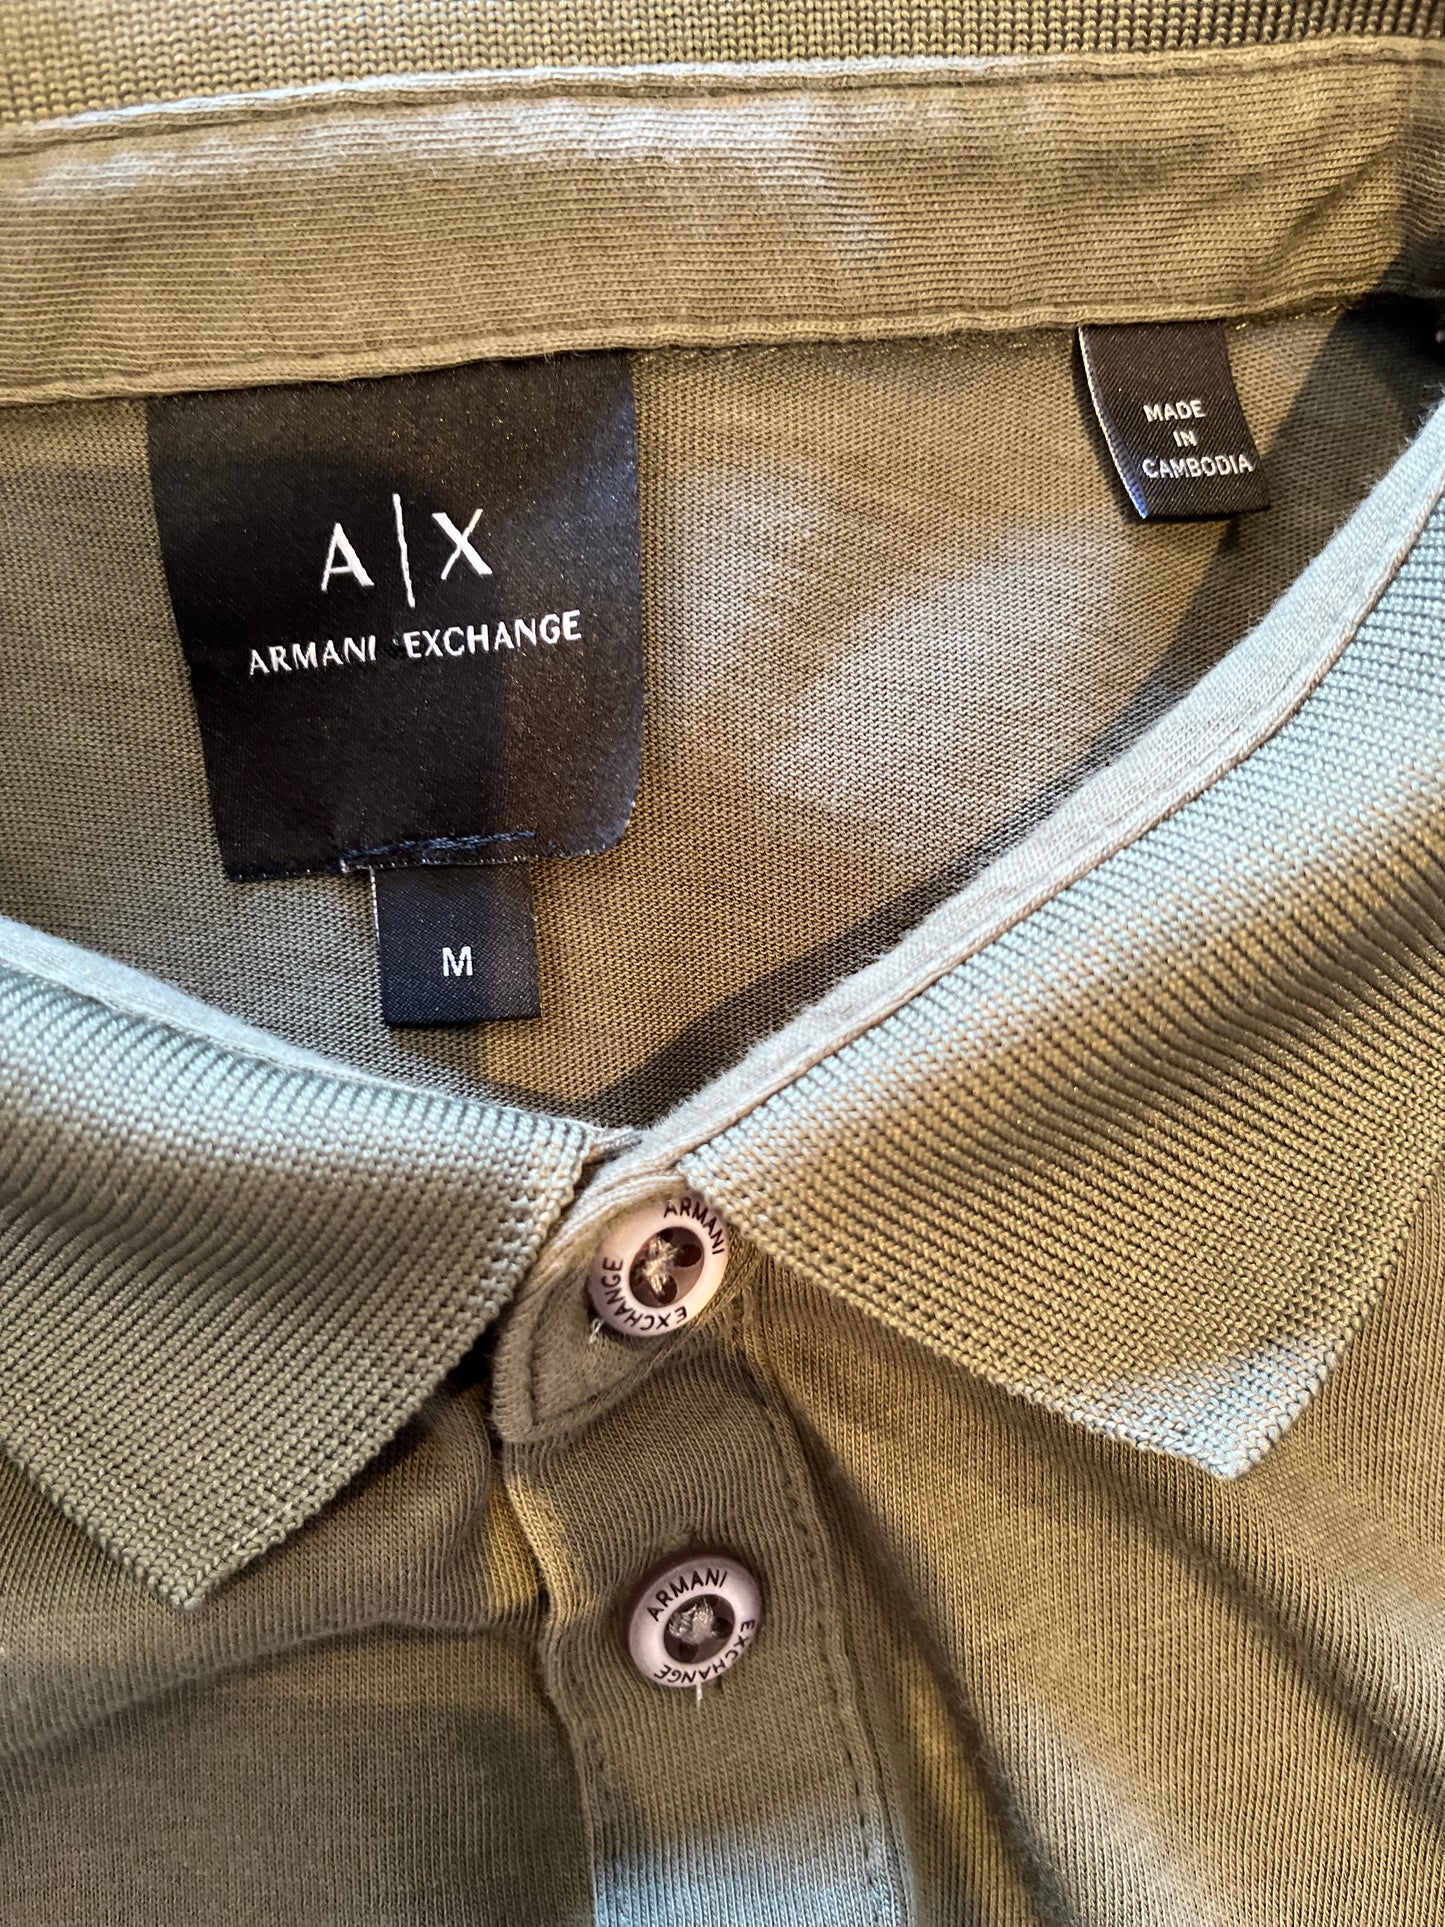 Armani Armani Exchange 100% Cotton Khaki Polo Size Medium Logo Chest Print